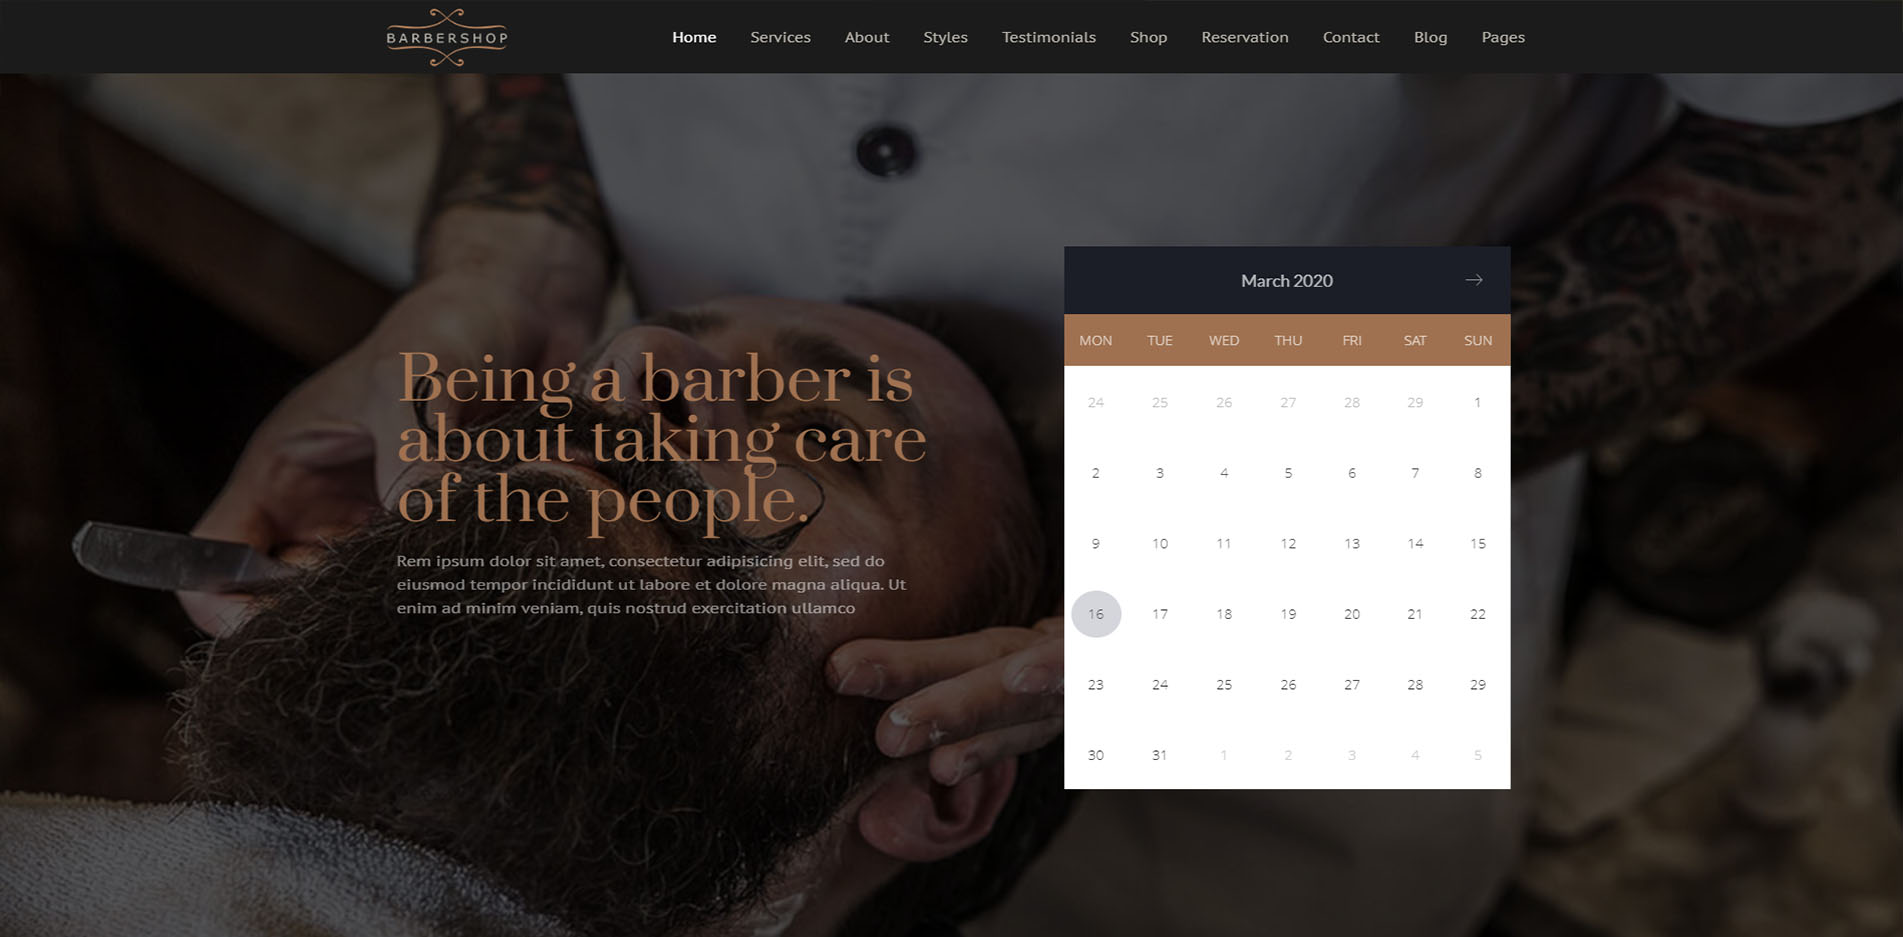 Barber Shop Website Design #5